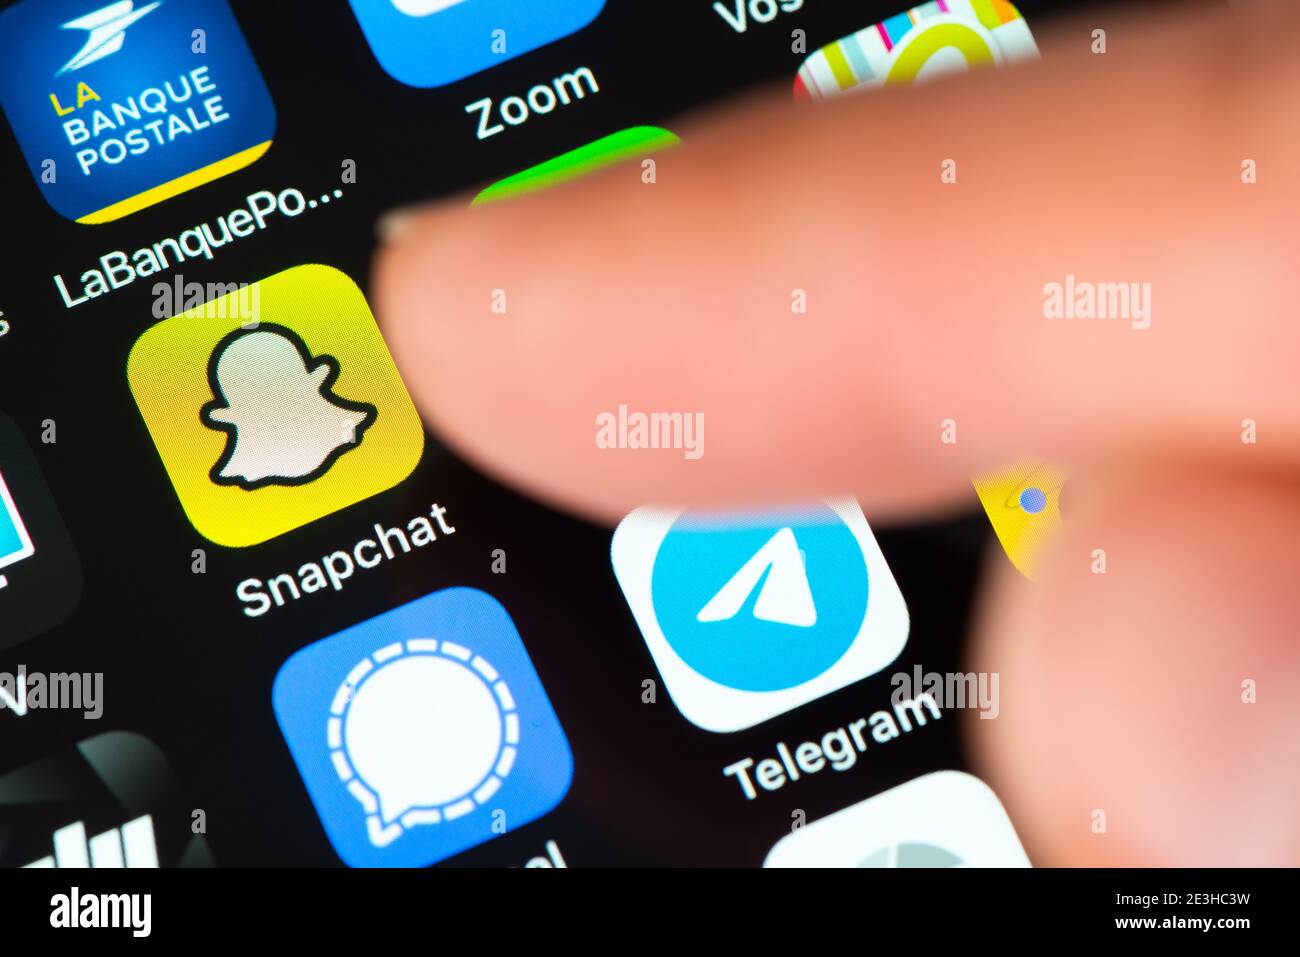 El dedo señala el icono de la aplicación Snapchat en la pantalla de Apple iPhone. Snapchat es una aplicación de mensajería multimedia desarrollada por Snap Inc Foto de stock